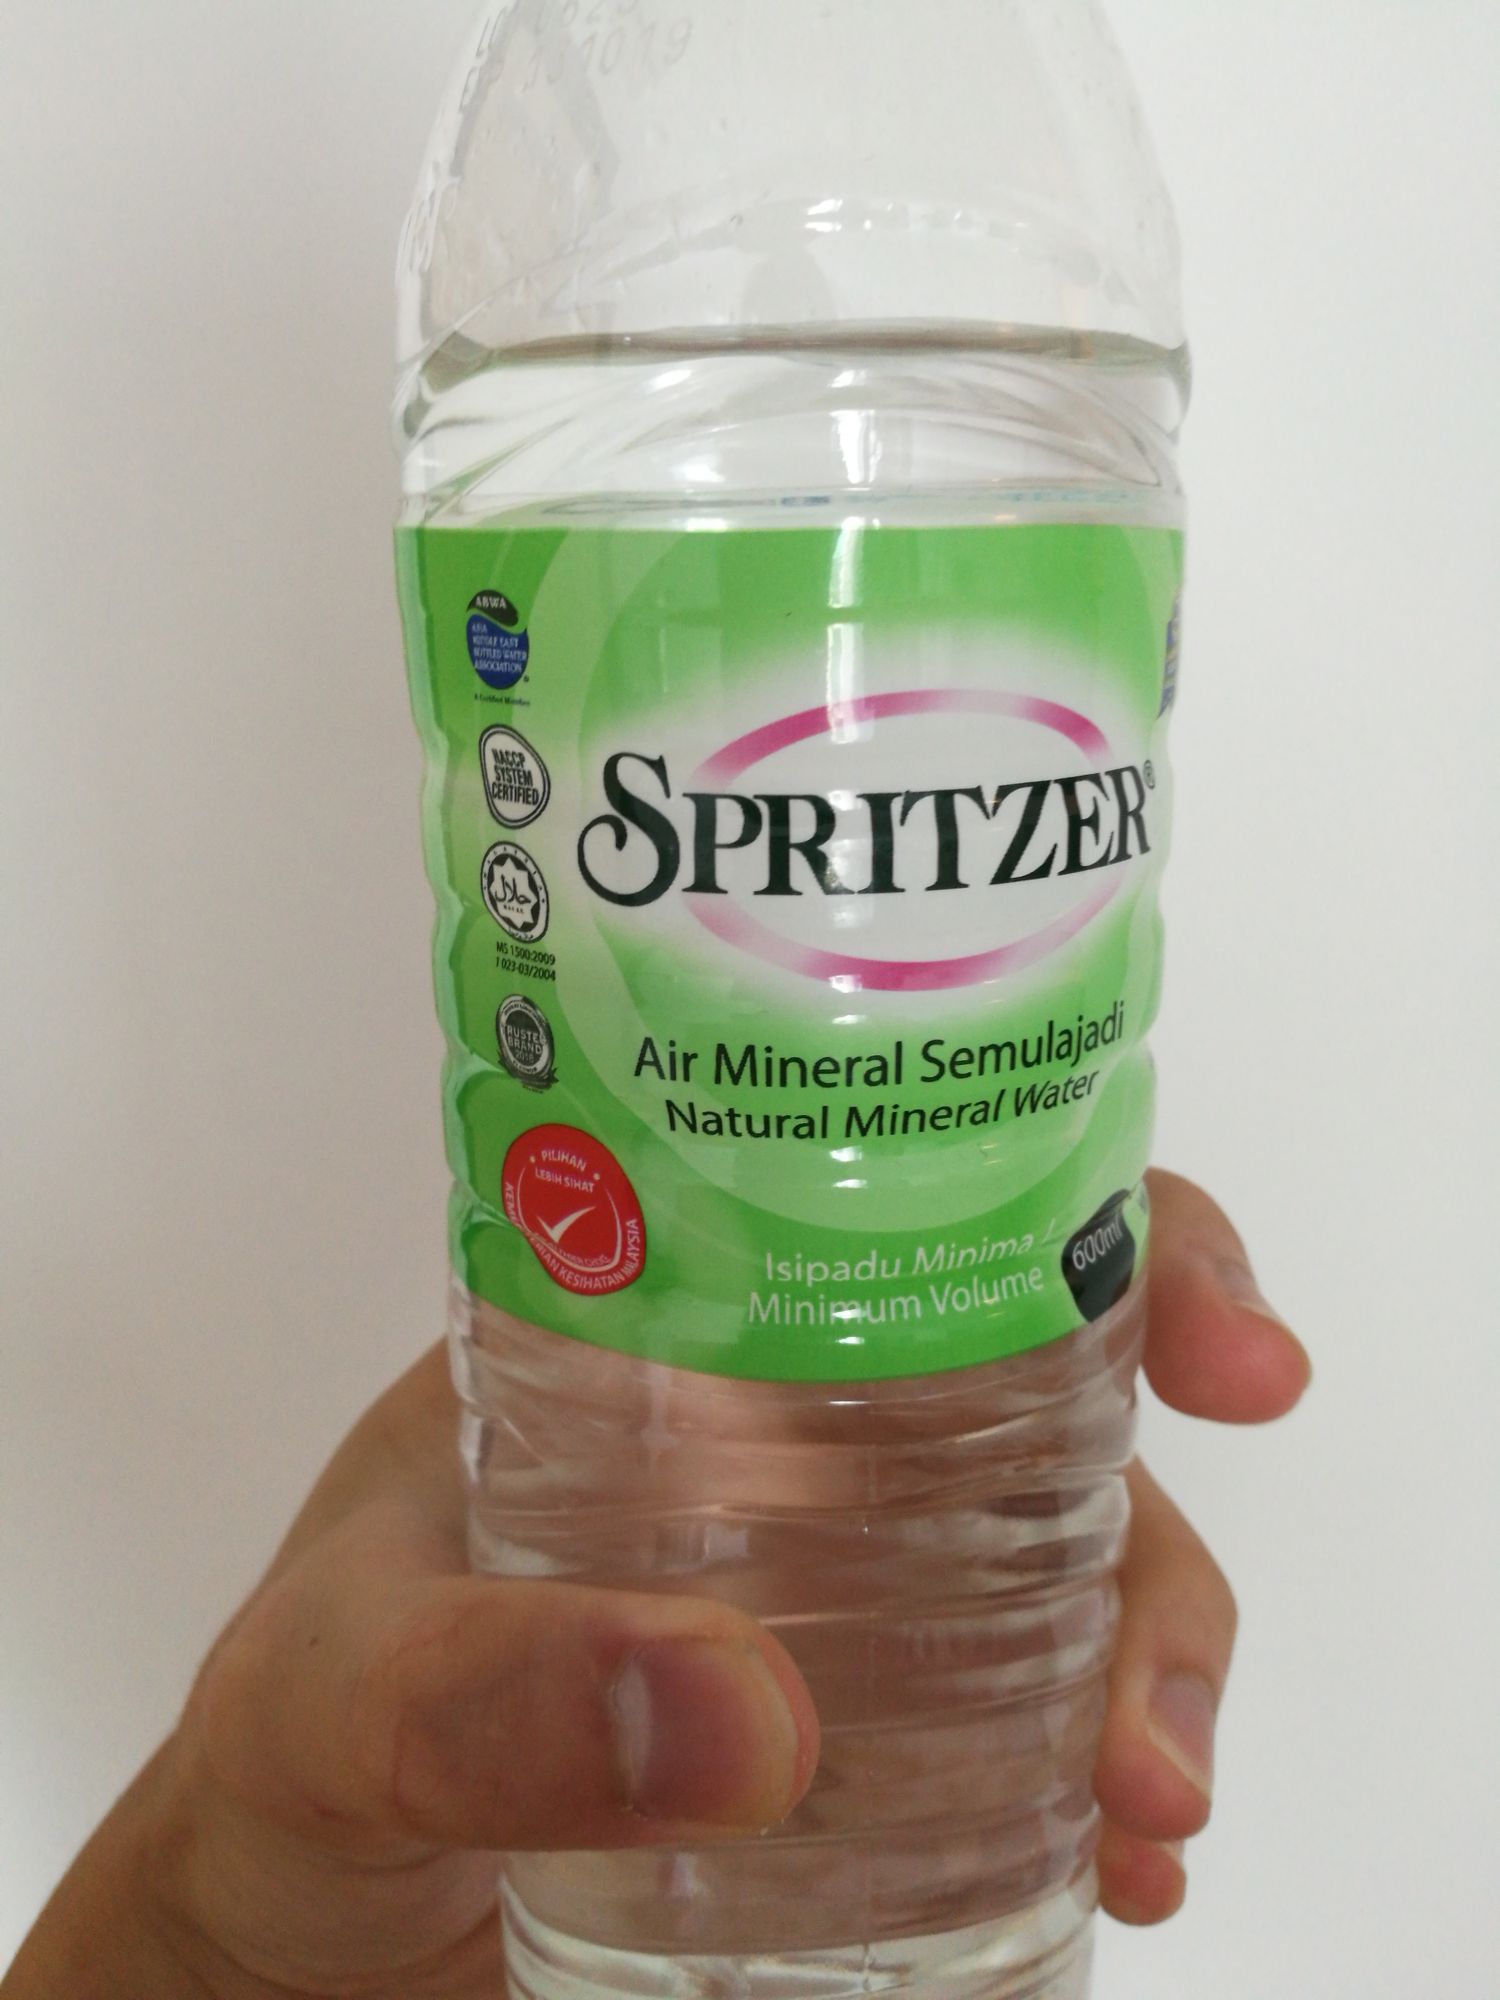 Air mineral spritzer